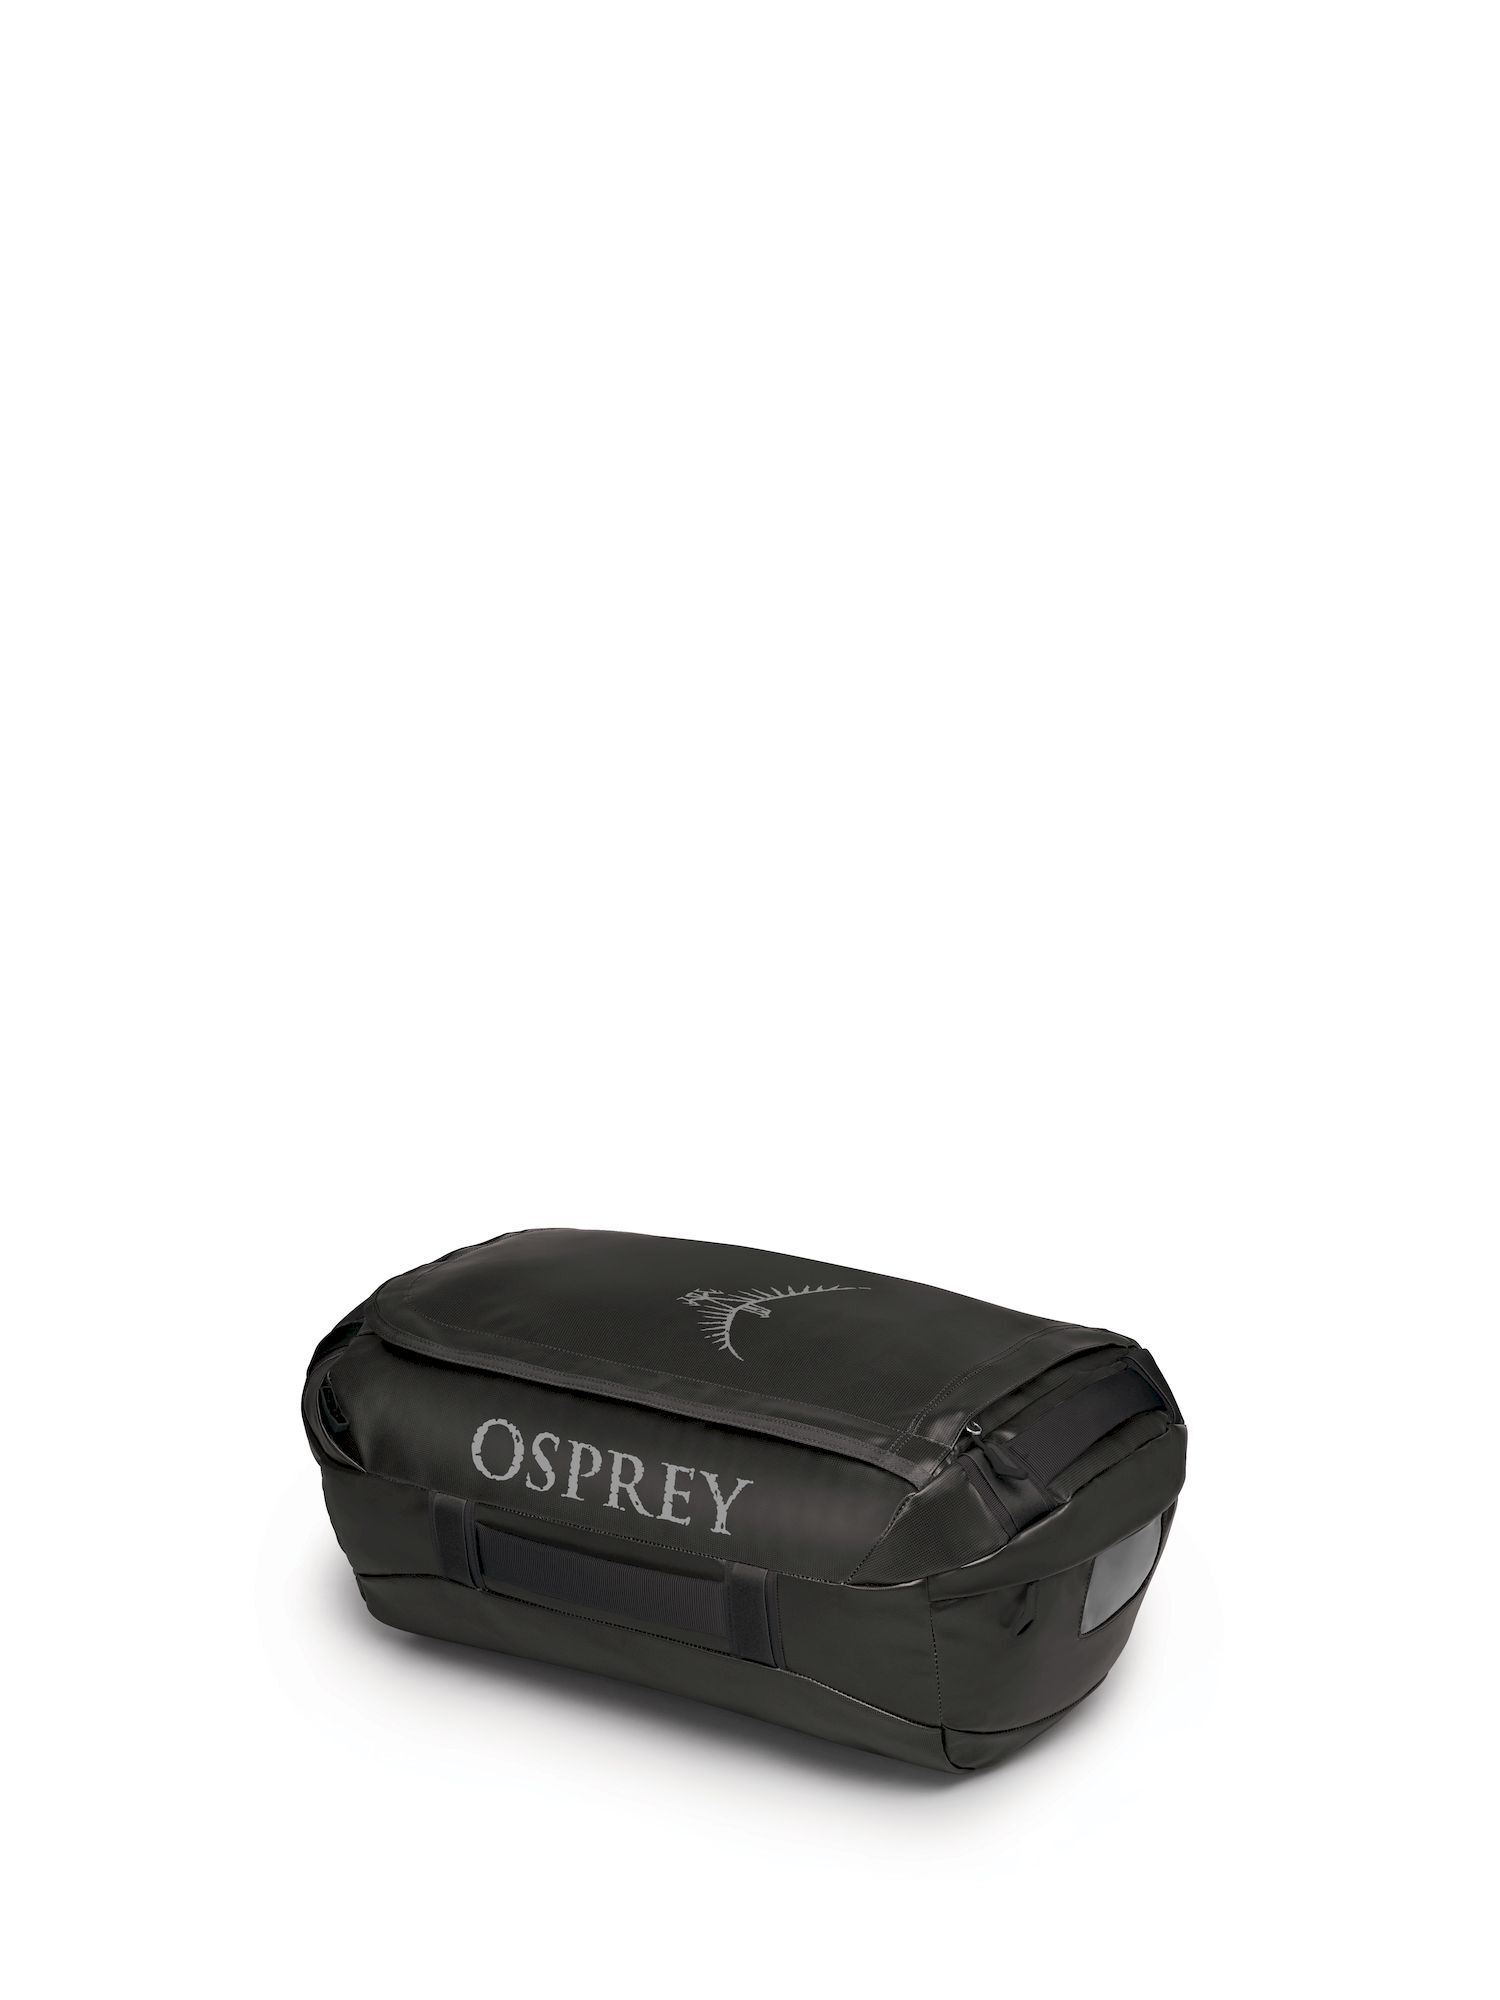 Osprey - Transporter 40 - Bolsa de viaje